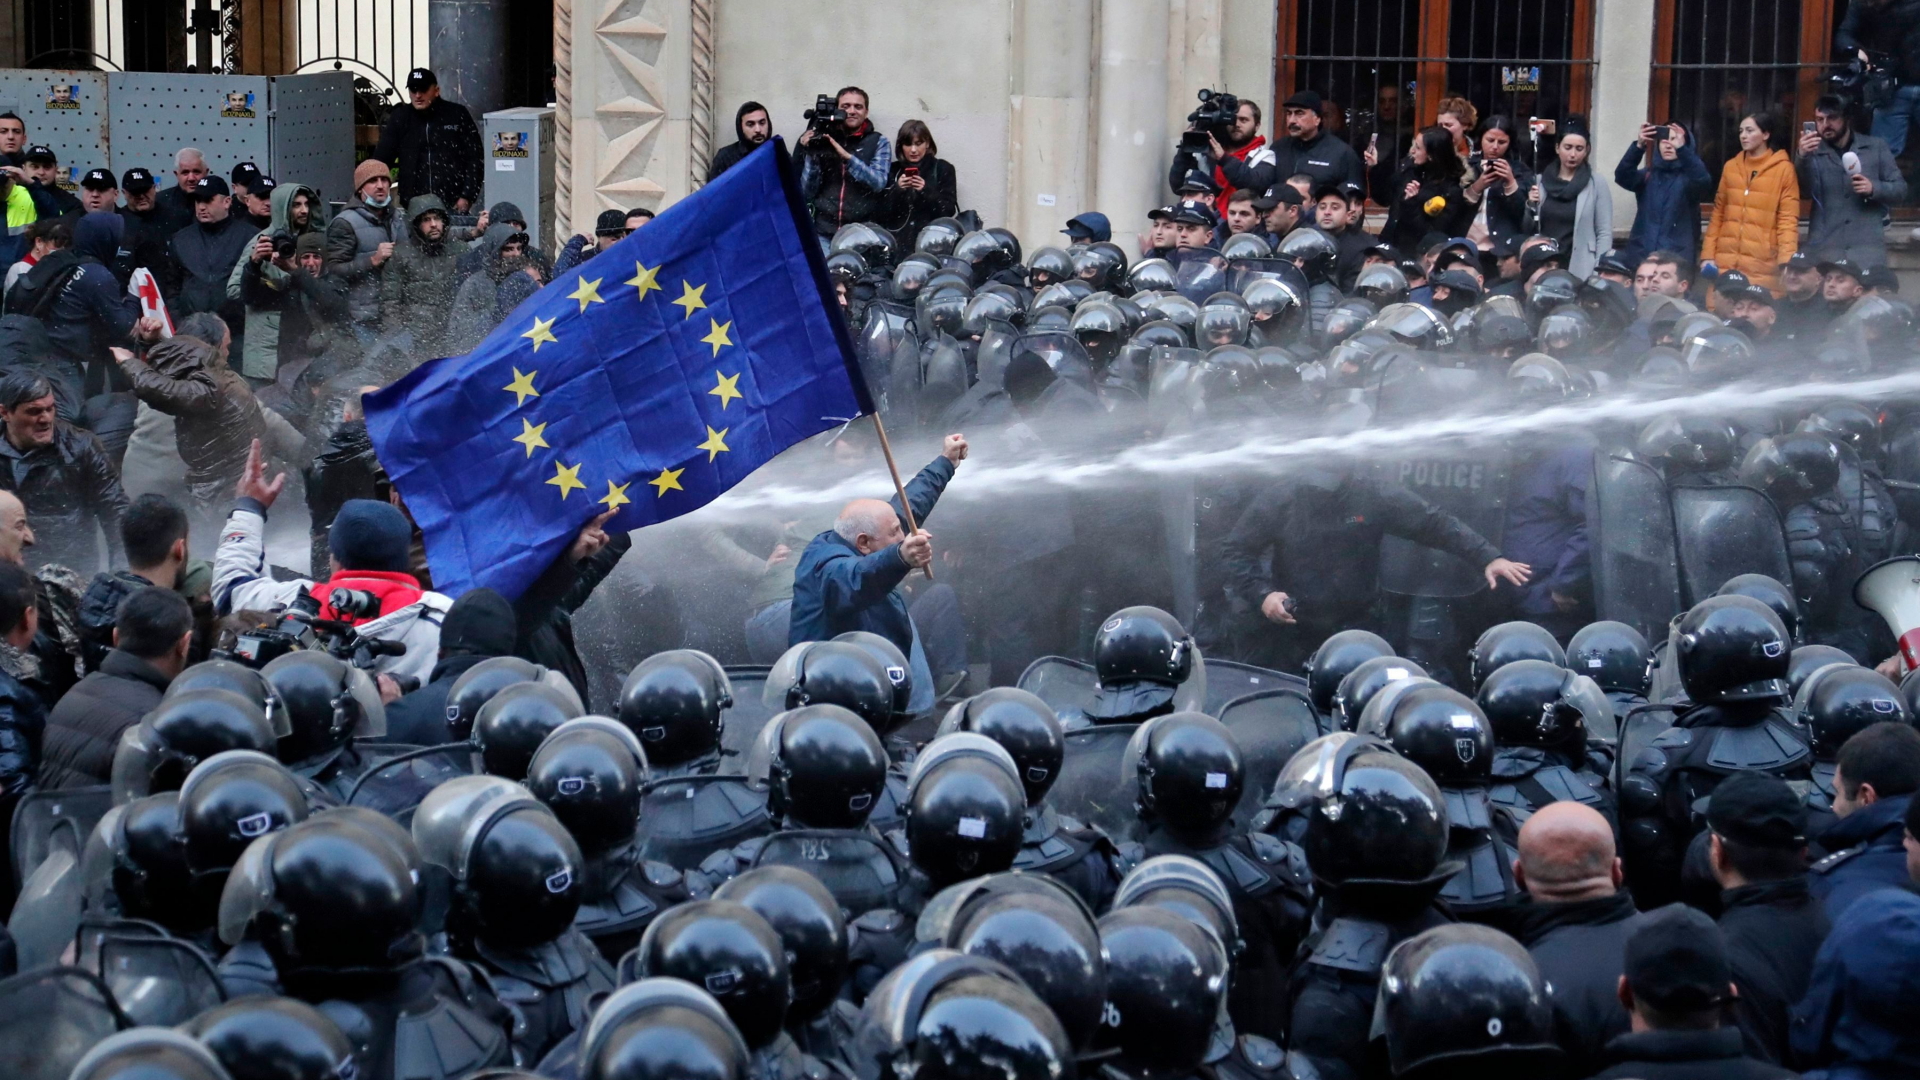 Ein Demonstrant mit EU-Flagge stellt sich einem Wasserwerfer entgegen | ZURAB KURTSIKIDZE/EPA-EFE/REX